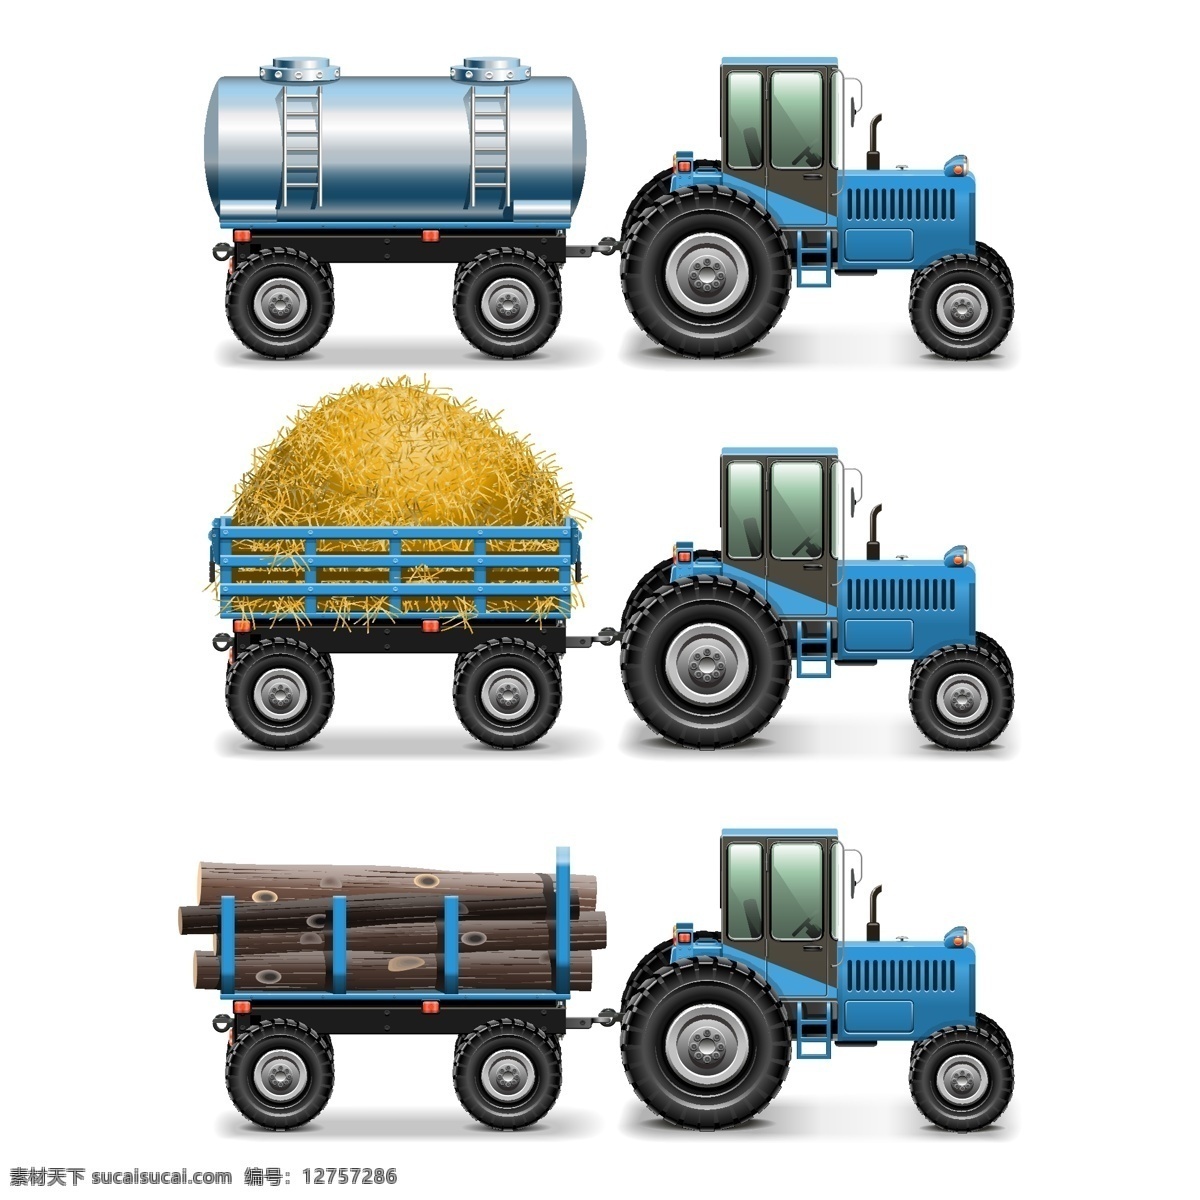 精美 蓝色 拖拉机 矢量 工程拖拉机 农业 工业 木头 稻草 运输 农用运输车 矢量图 白色